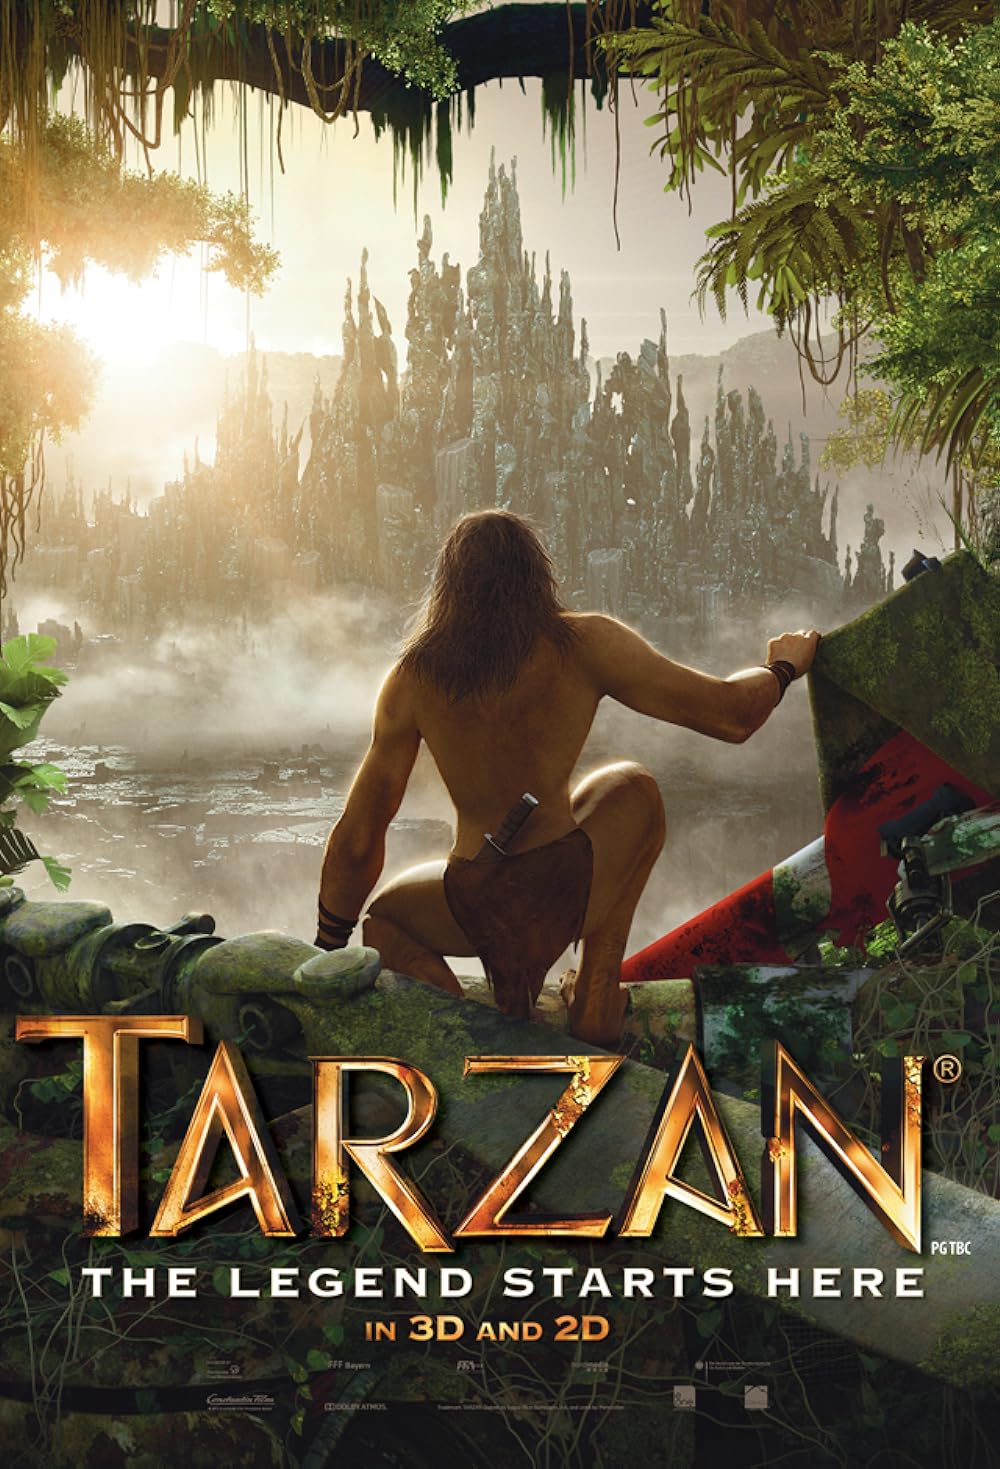 ariff wawa recommends Tarzan Full Movie Free